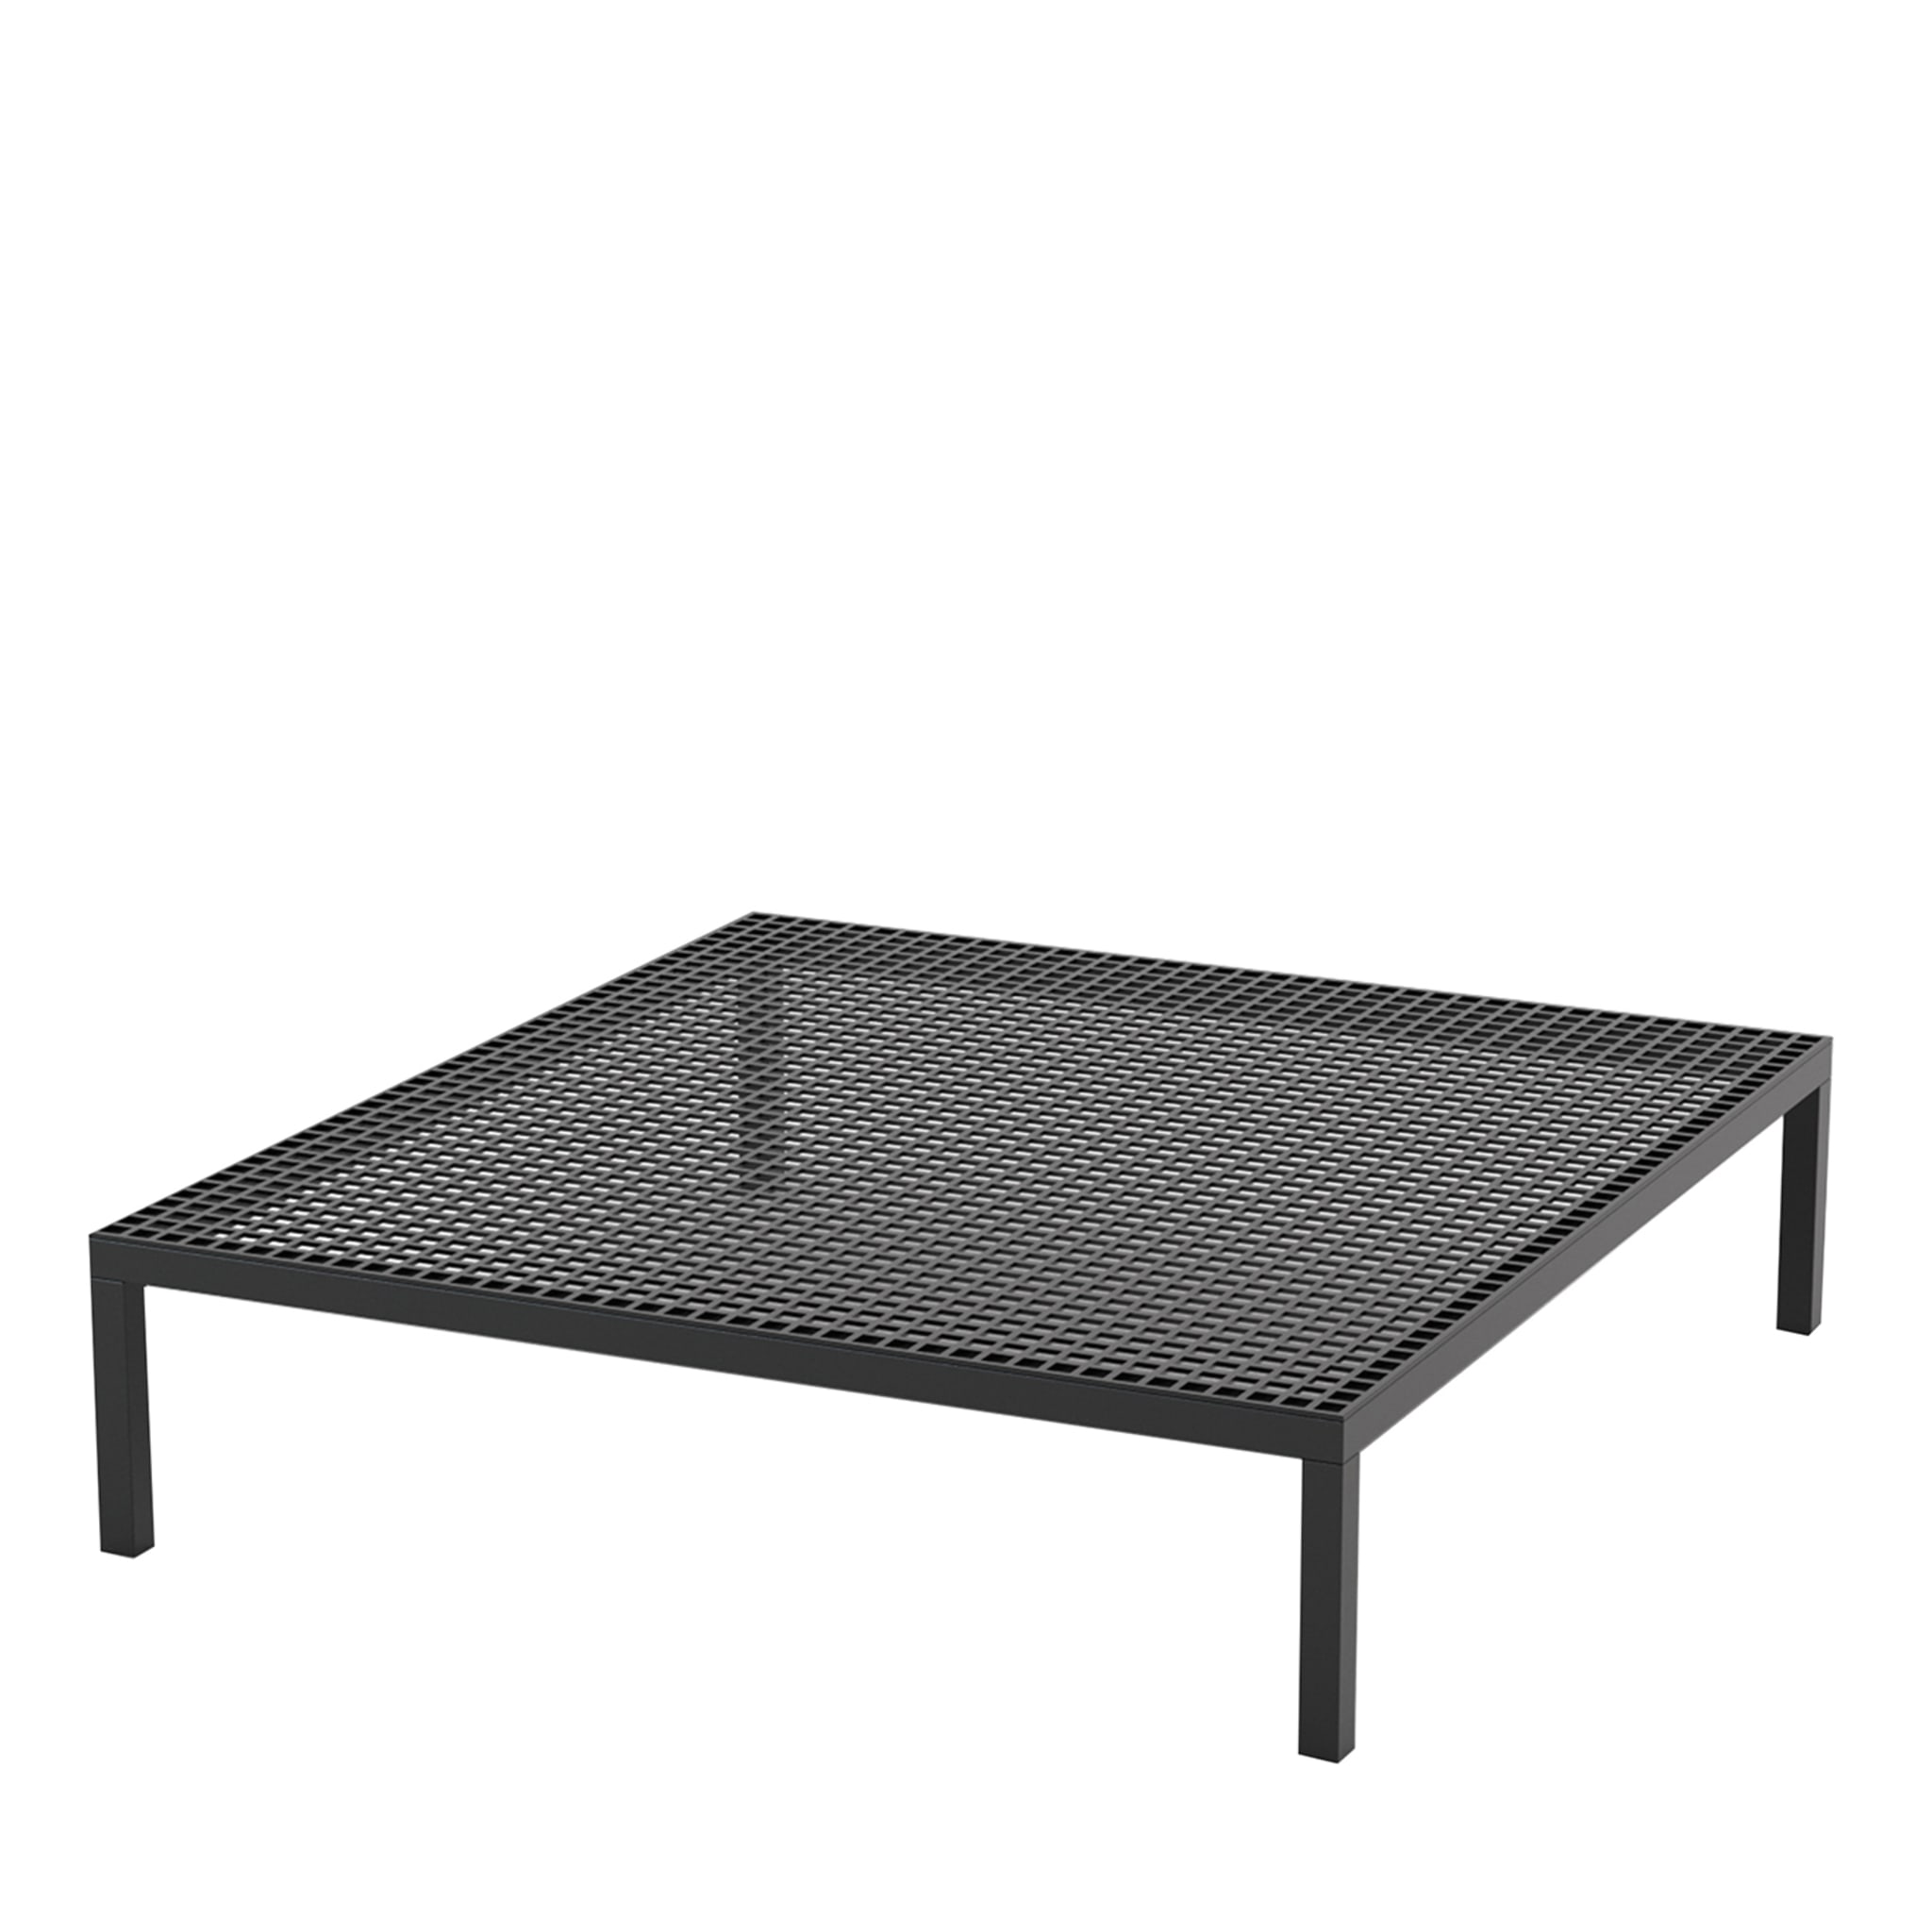 Table basse carrée noire Zenit - Vue principale